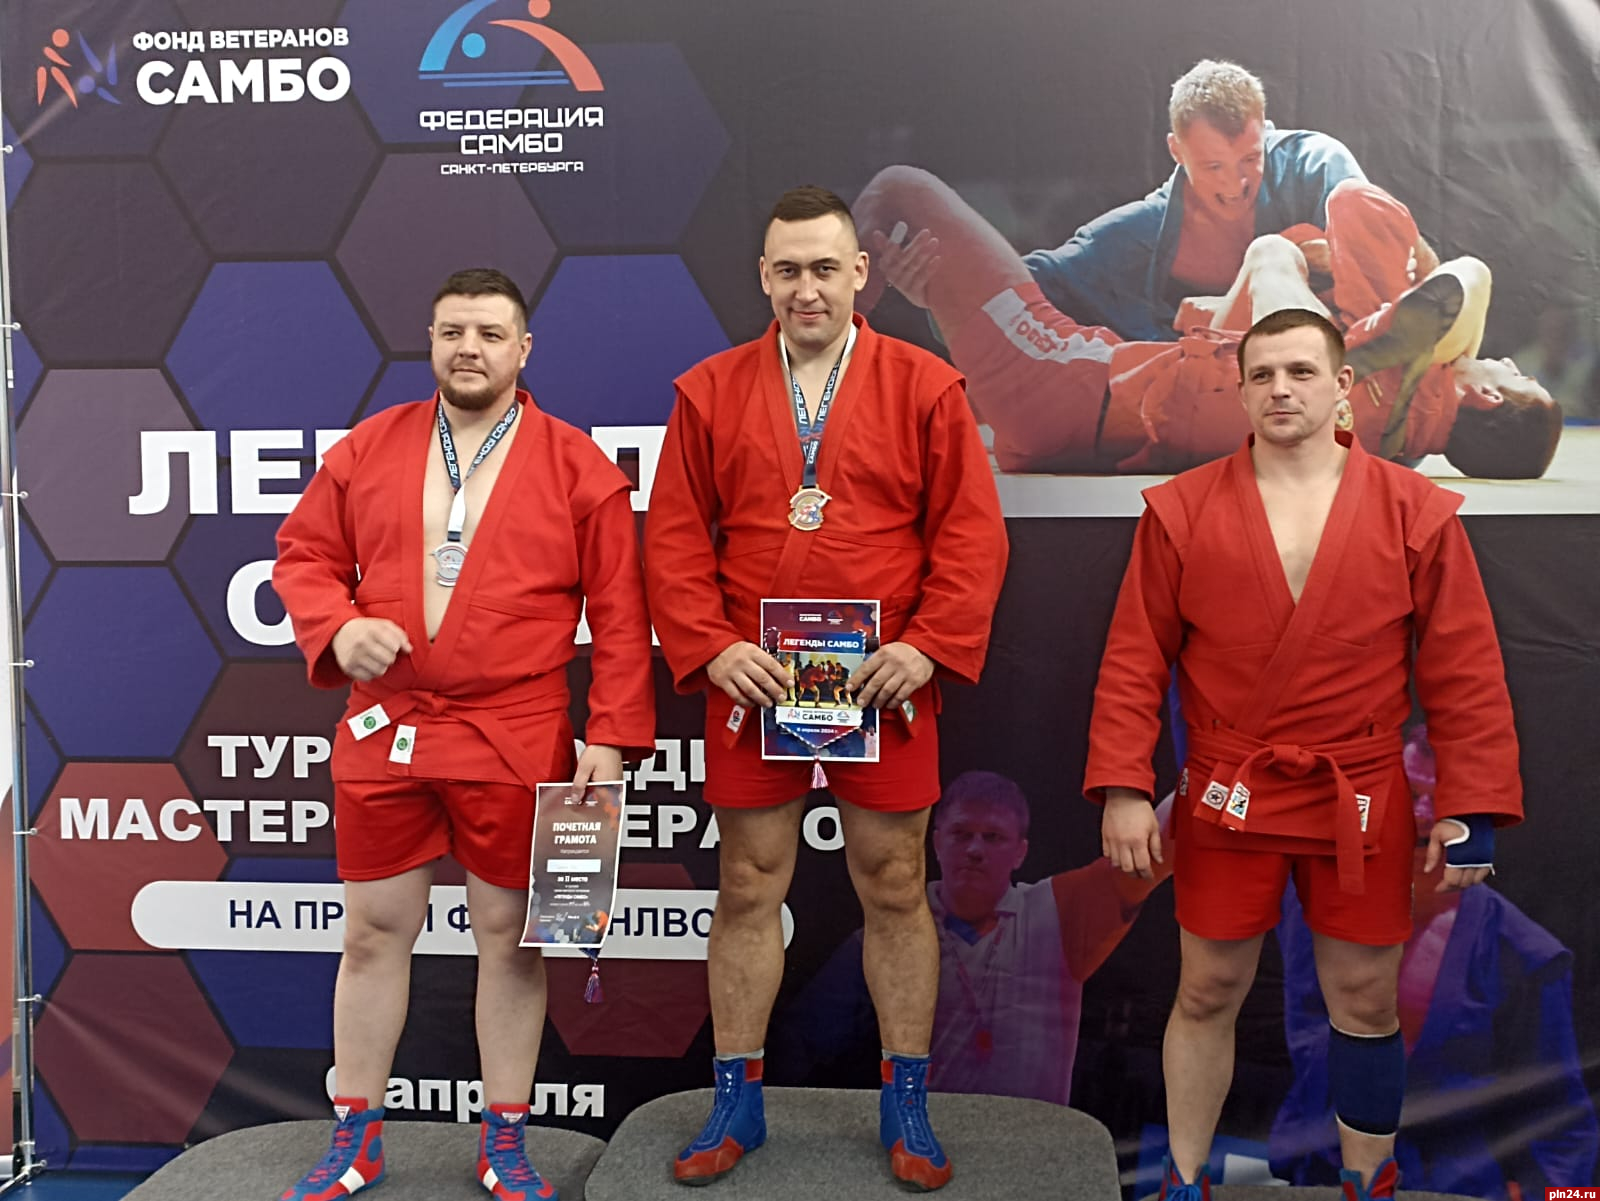 Представители псковского спецназа «Зубр» получили медали на соревнованиях по бегу и самбу